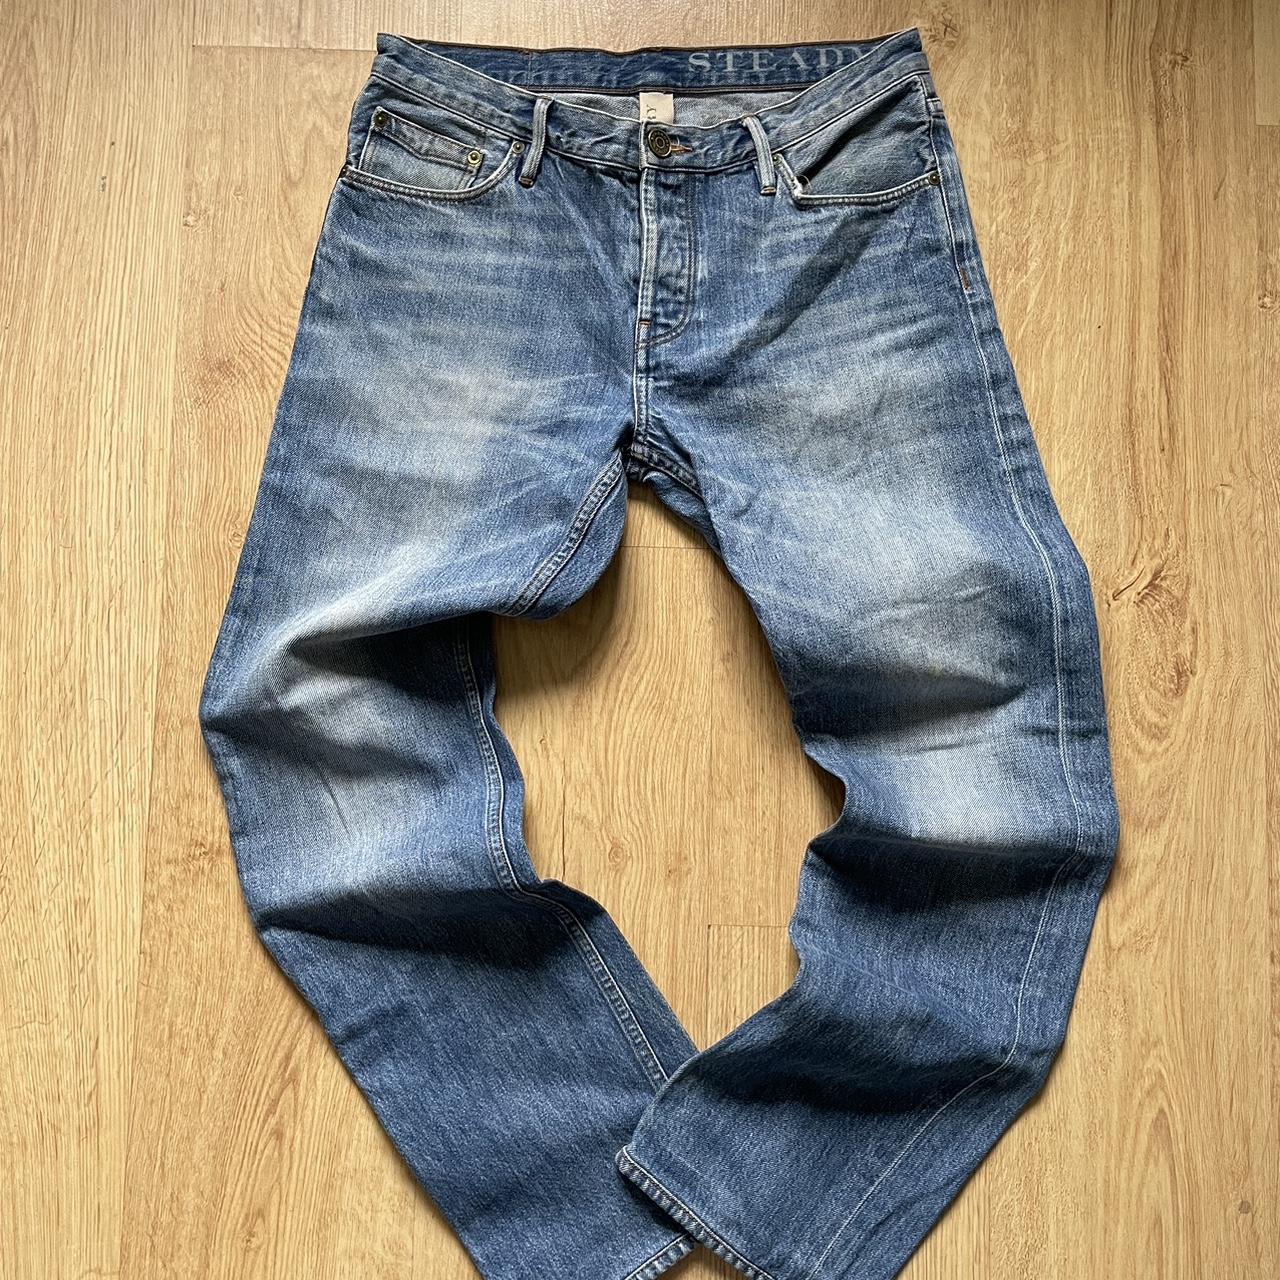 Burberry Brit Men's Blue Jeans